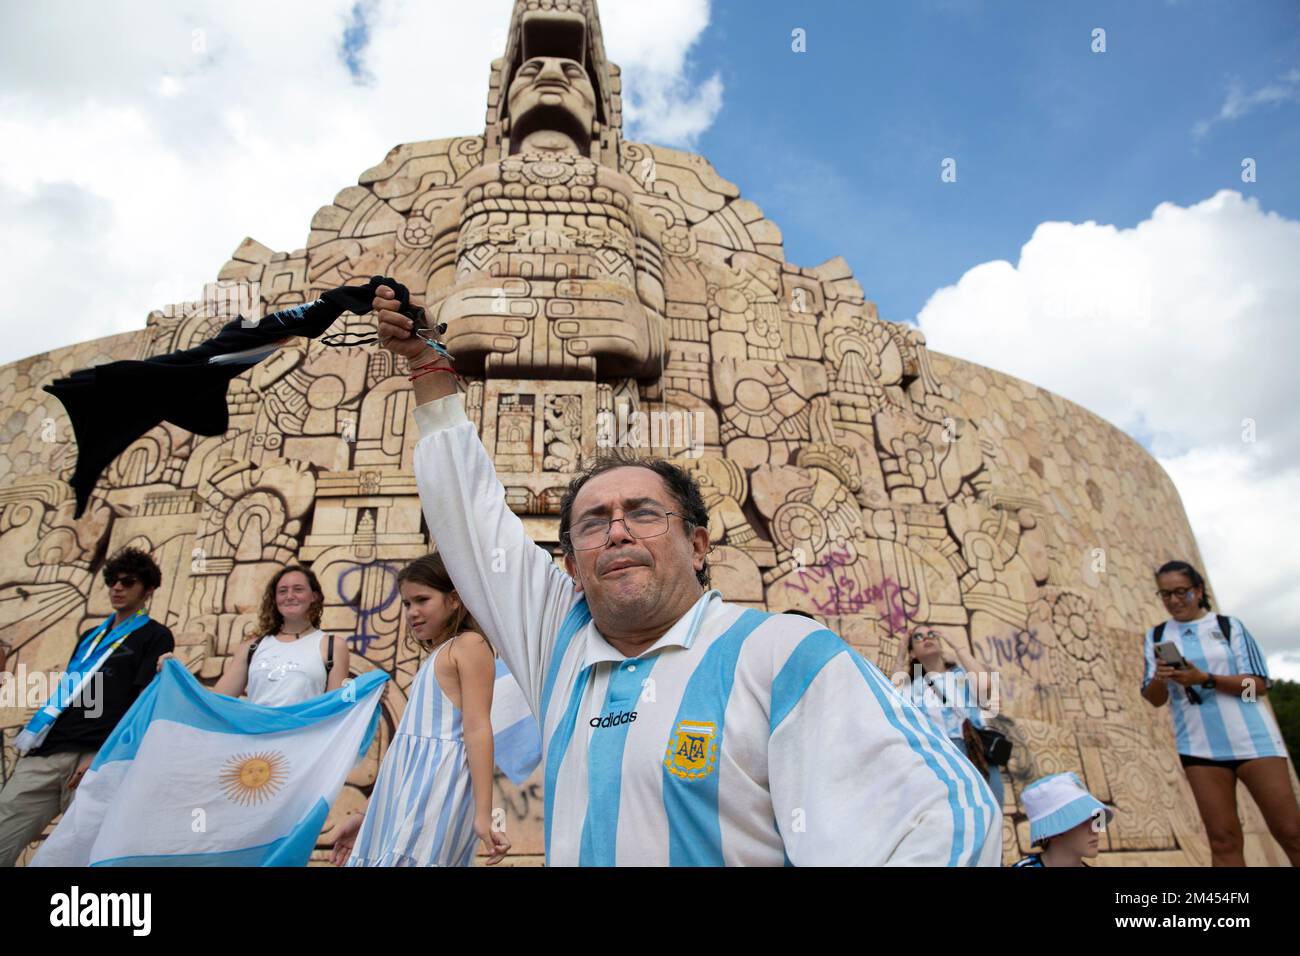 Les fans de football argentins célèbrent la victoire de leurs équipes en coupe du monde sur la France au Monument de la Patrie (Monumento a la Patria) à Merida, Yucatan, Mexique sur 18 décembre 2022. Photographie de Bénédicte Desrus Banque D'Images